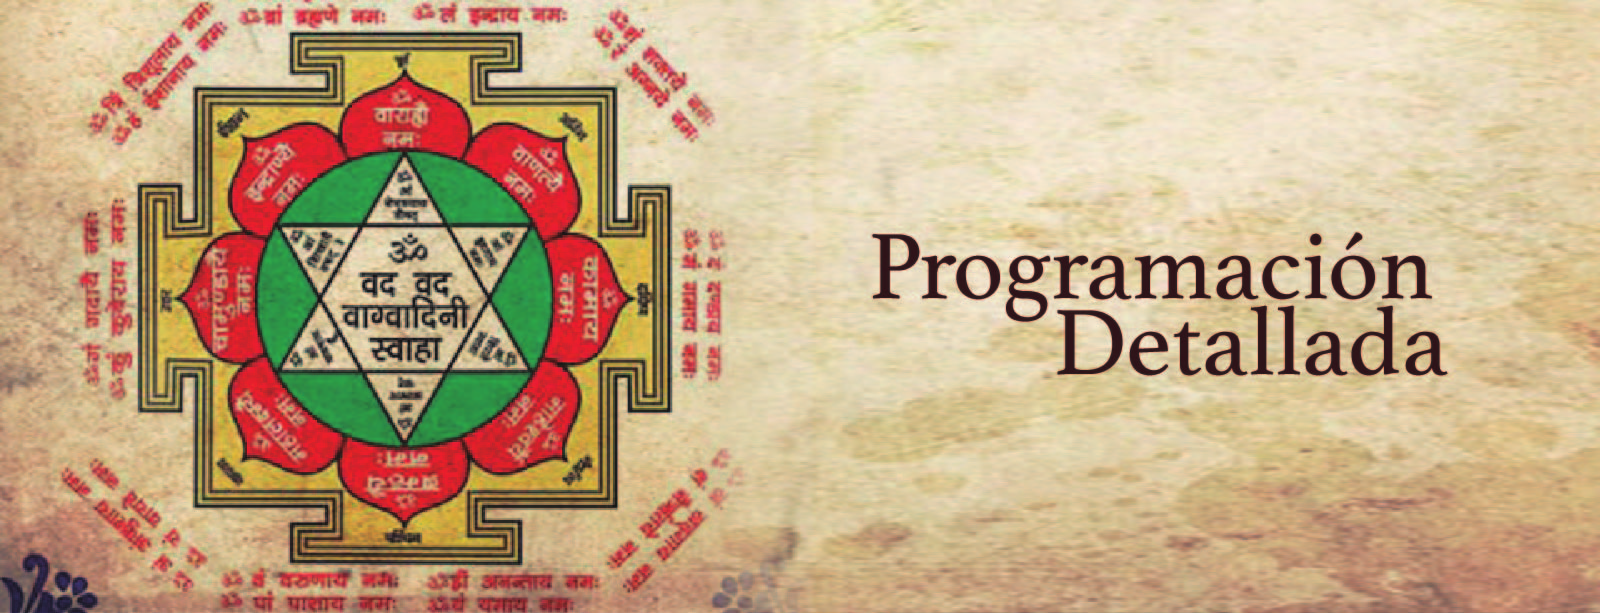 Programación Detallada Sábados 15, 22 y 29 de octubre MÓDULO 1 Los Fundamentos del Jyotish Astrología Védica 3 clases de 4 horas cada una. 1. El Jyotish Astrología Védica 2.